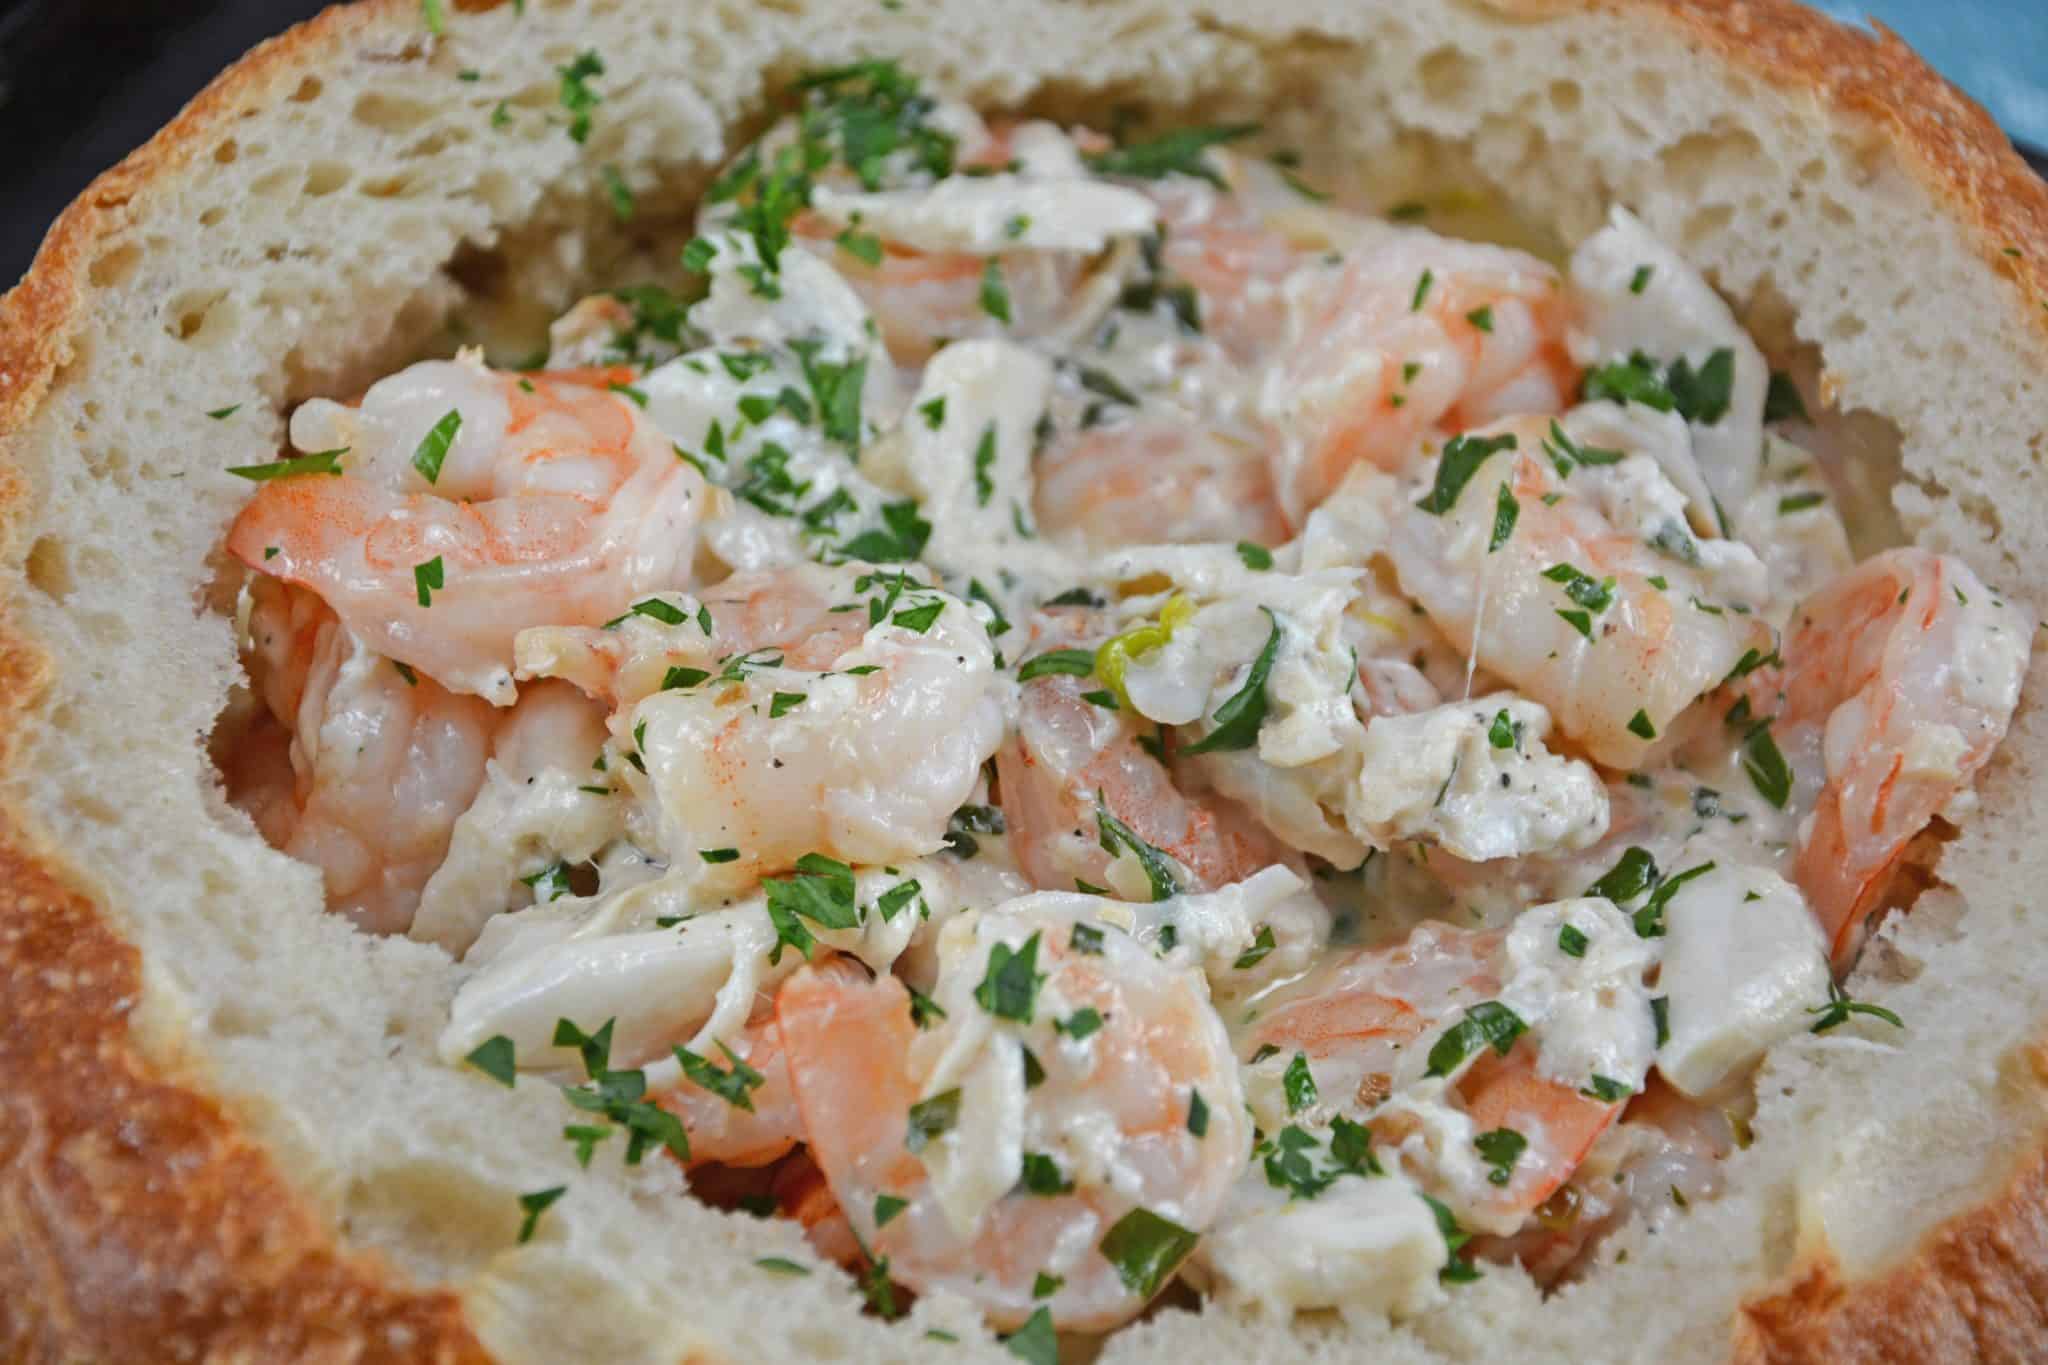 Creamy Delicious Shrimp Scampi Bread Bowl l Homemade Recipes http://homemaderecipes.com/healthy/24-homemade-shrimp-scampi-recipes